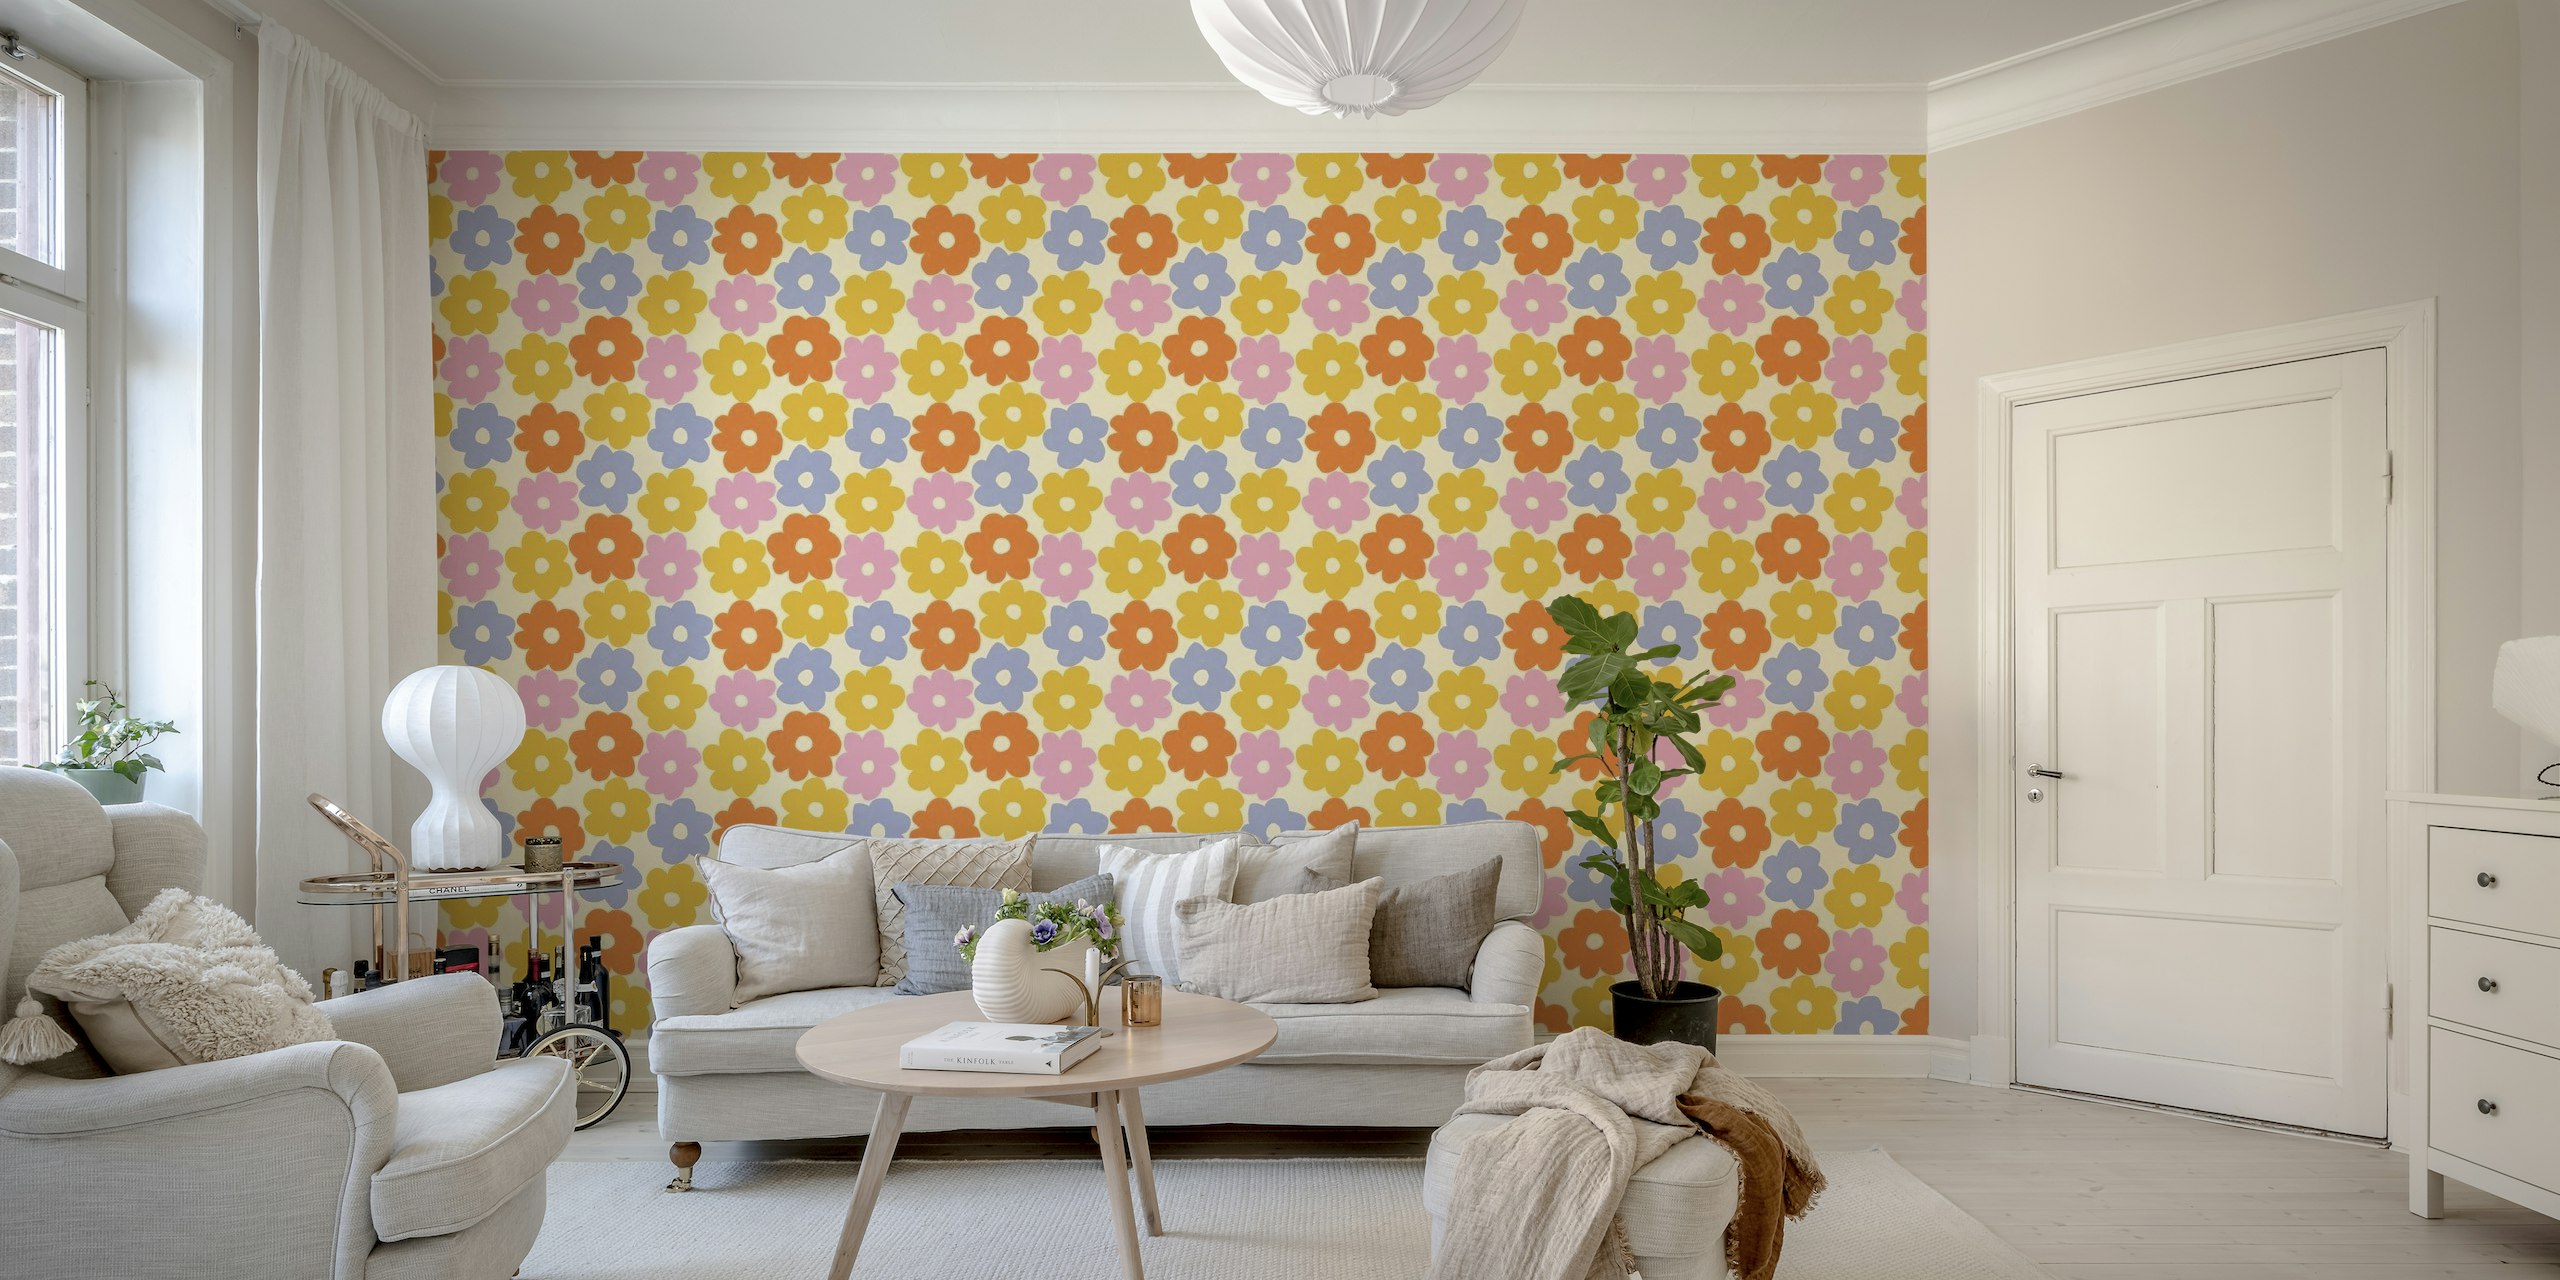 Fotomural de pared con estampado floral sencillo en colores pastel y fondo neutro cálido